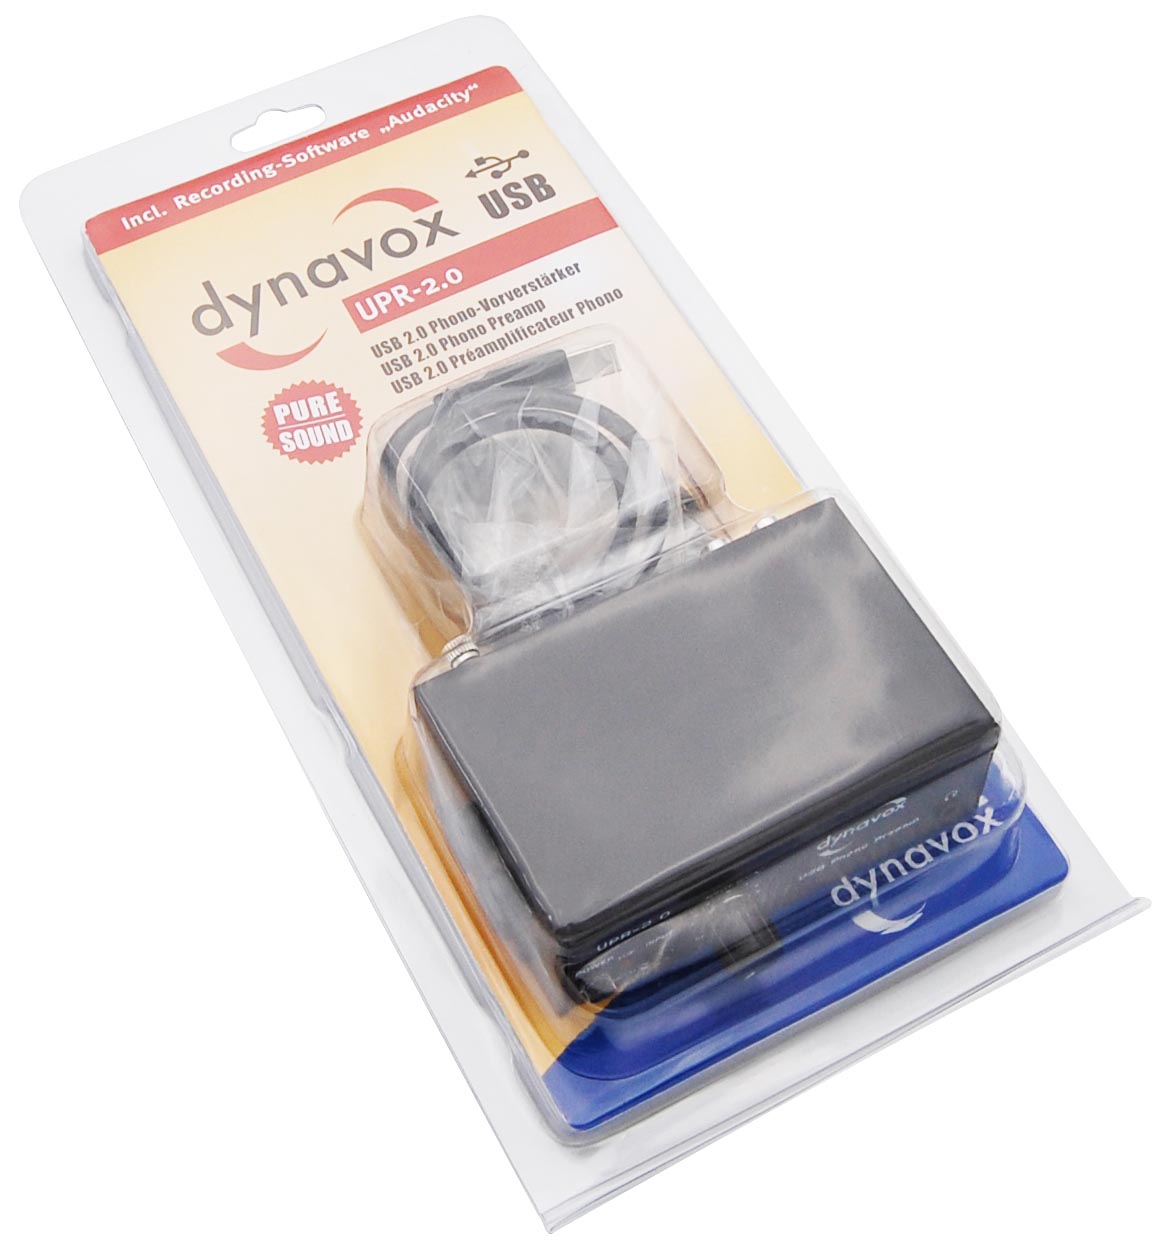 So wird der Dynavox UPR-2.0 Schwarz geliefert